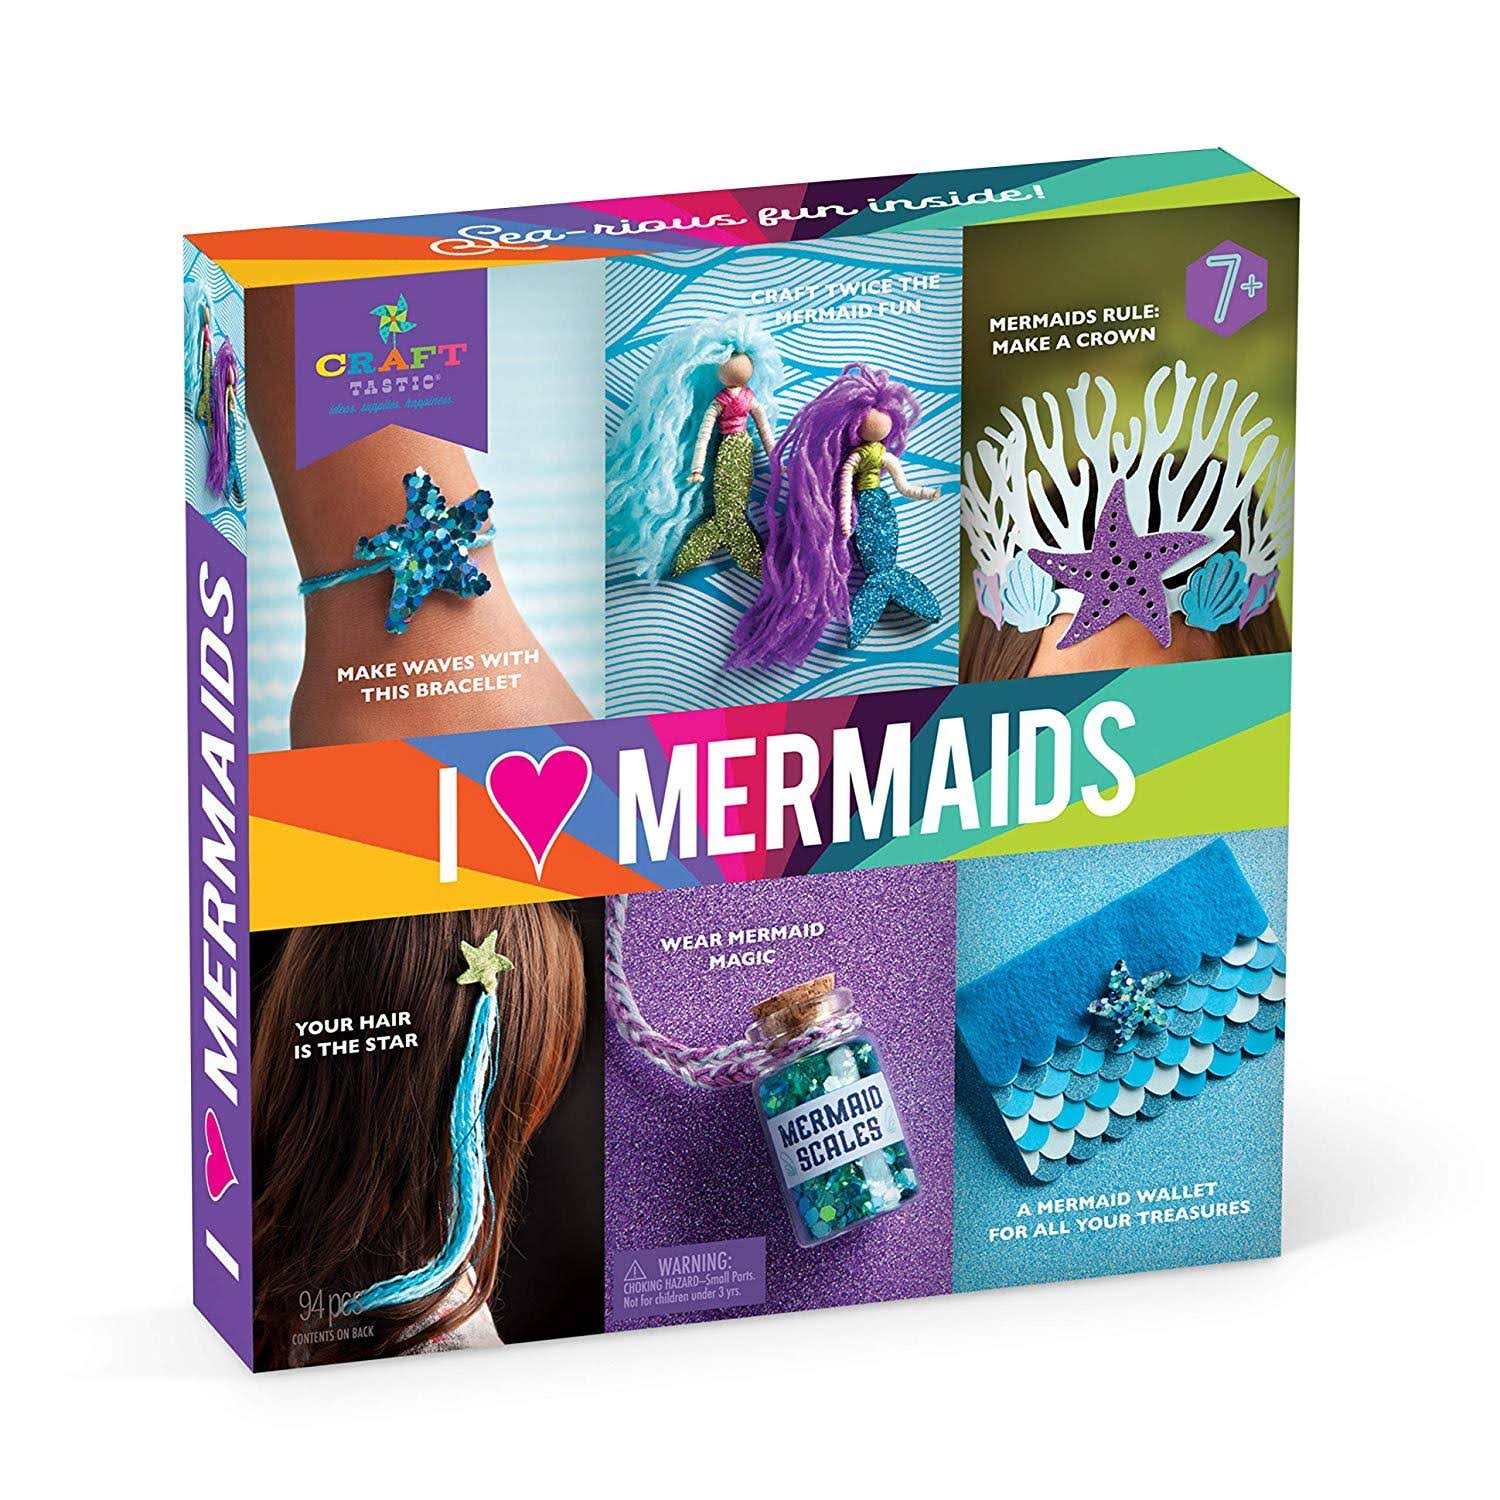 Craft-tastic I Love Mermaids Kit